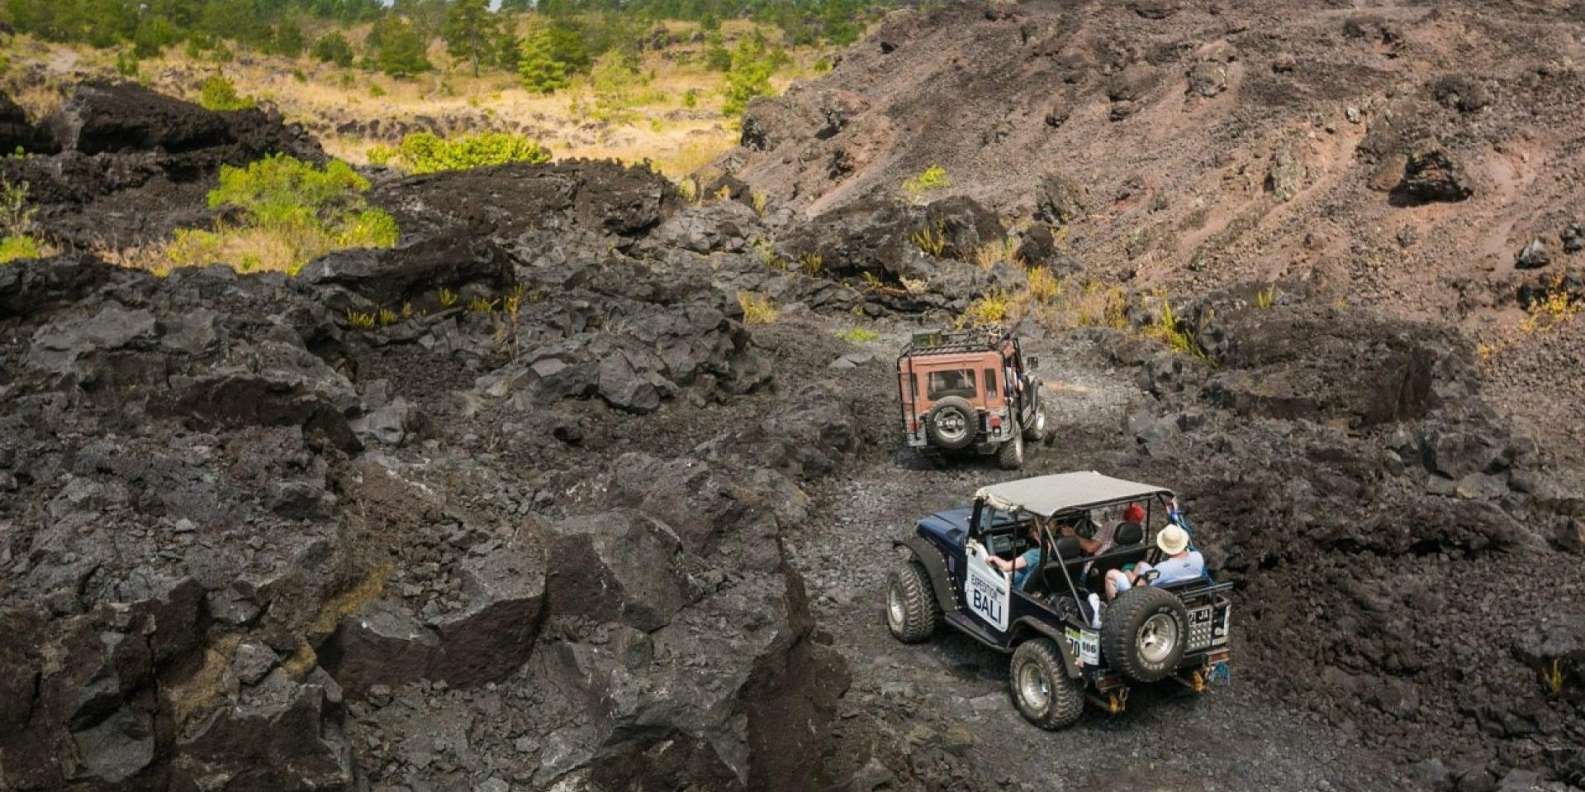 019-mt-batur-black-lava-jeep-tour-natural-hot-spring-11-t175089.jpg